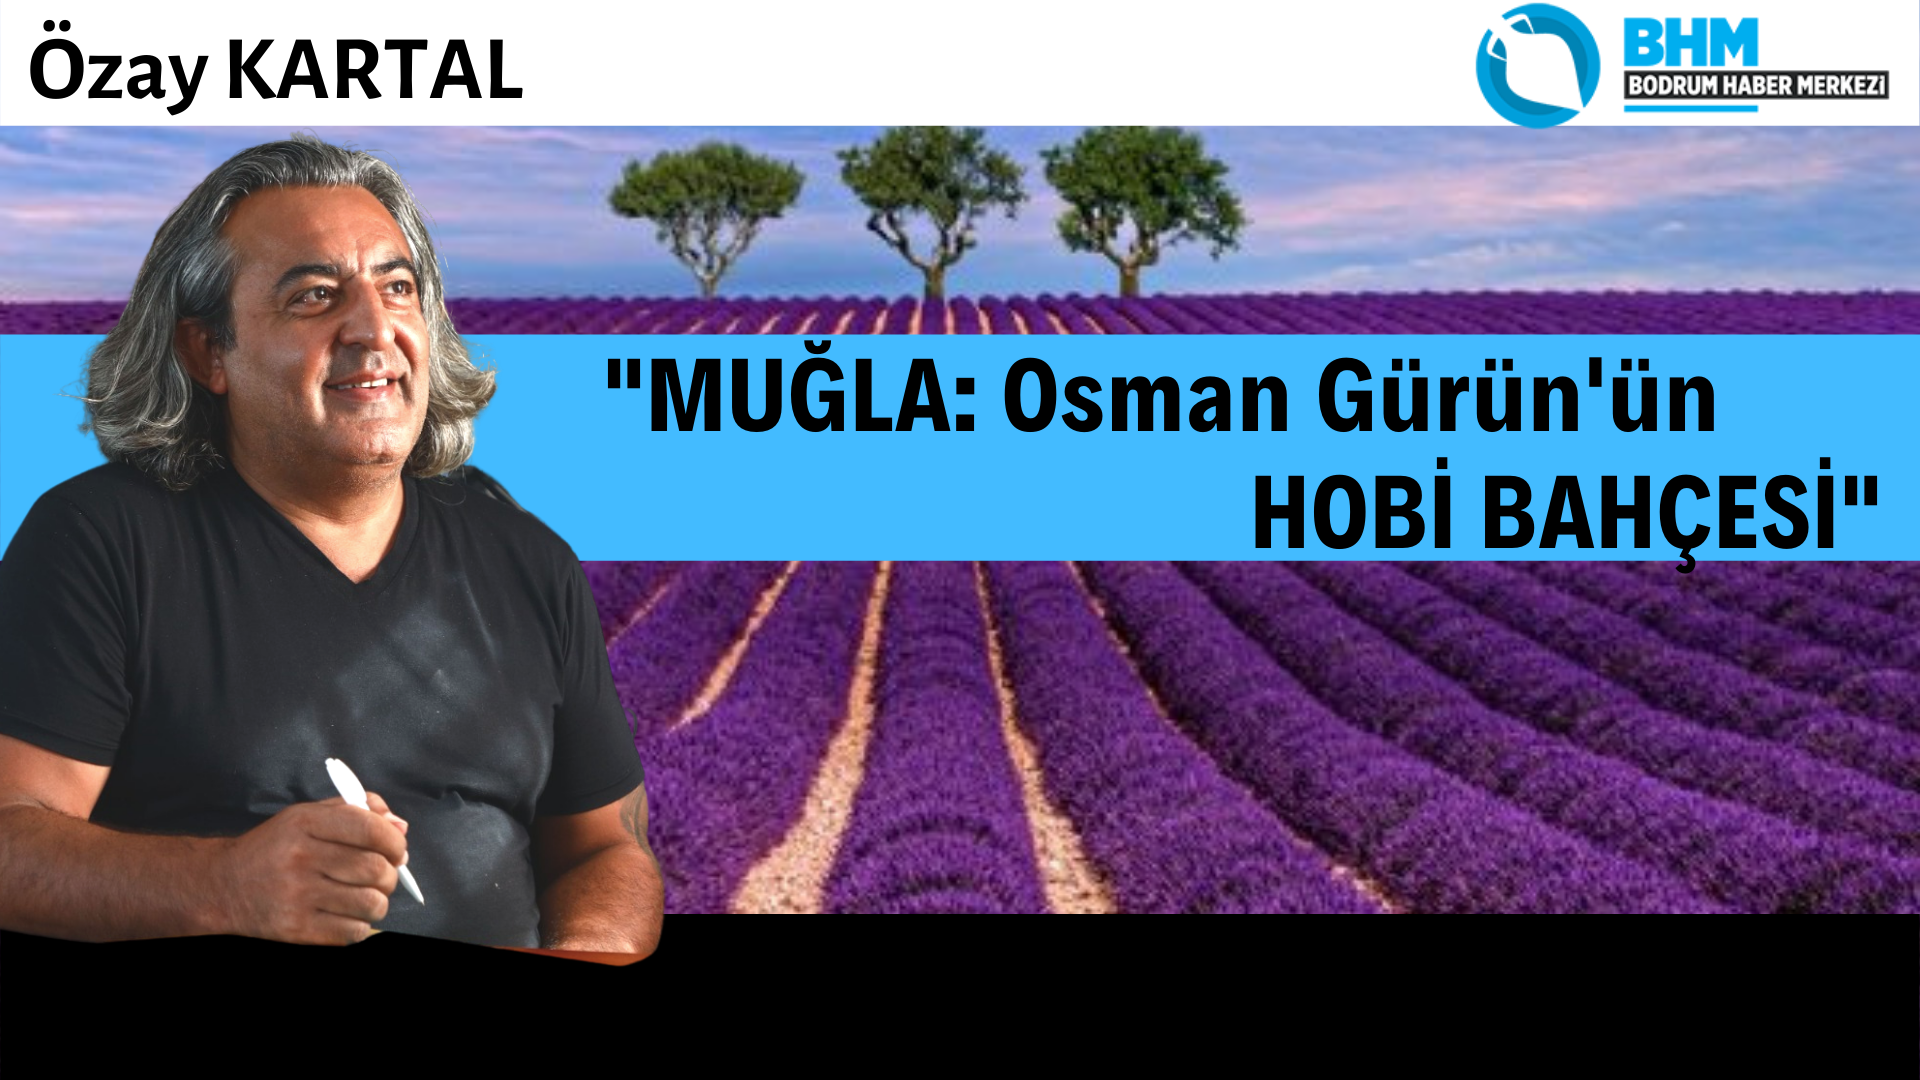 MUĞLA: Osman Gürün'ün HOBİ BAHÇESİ